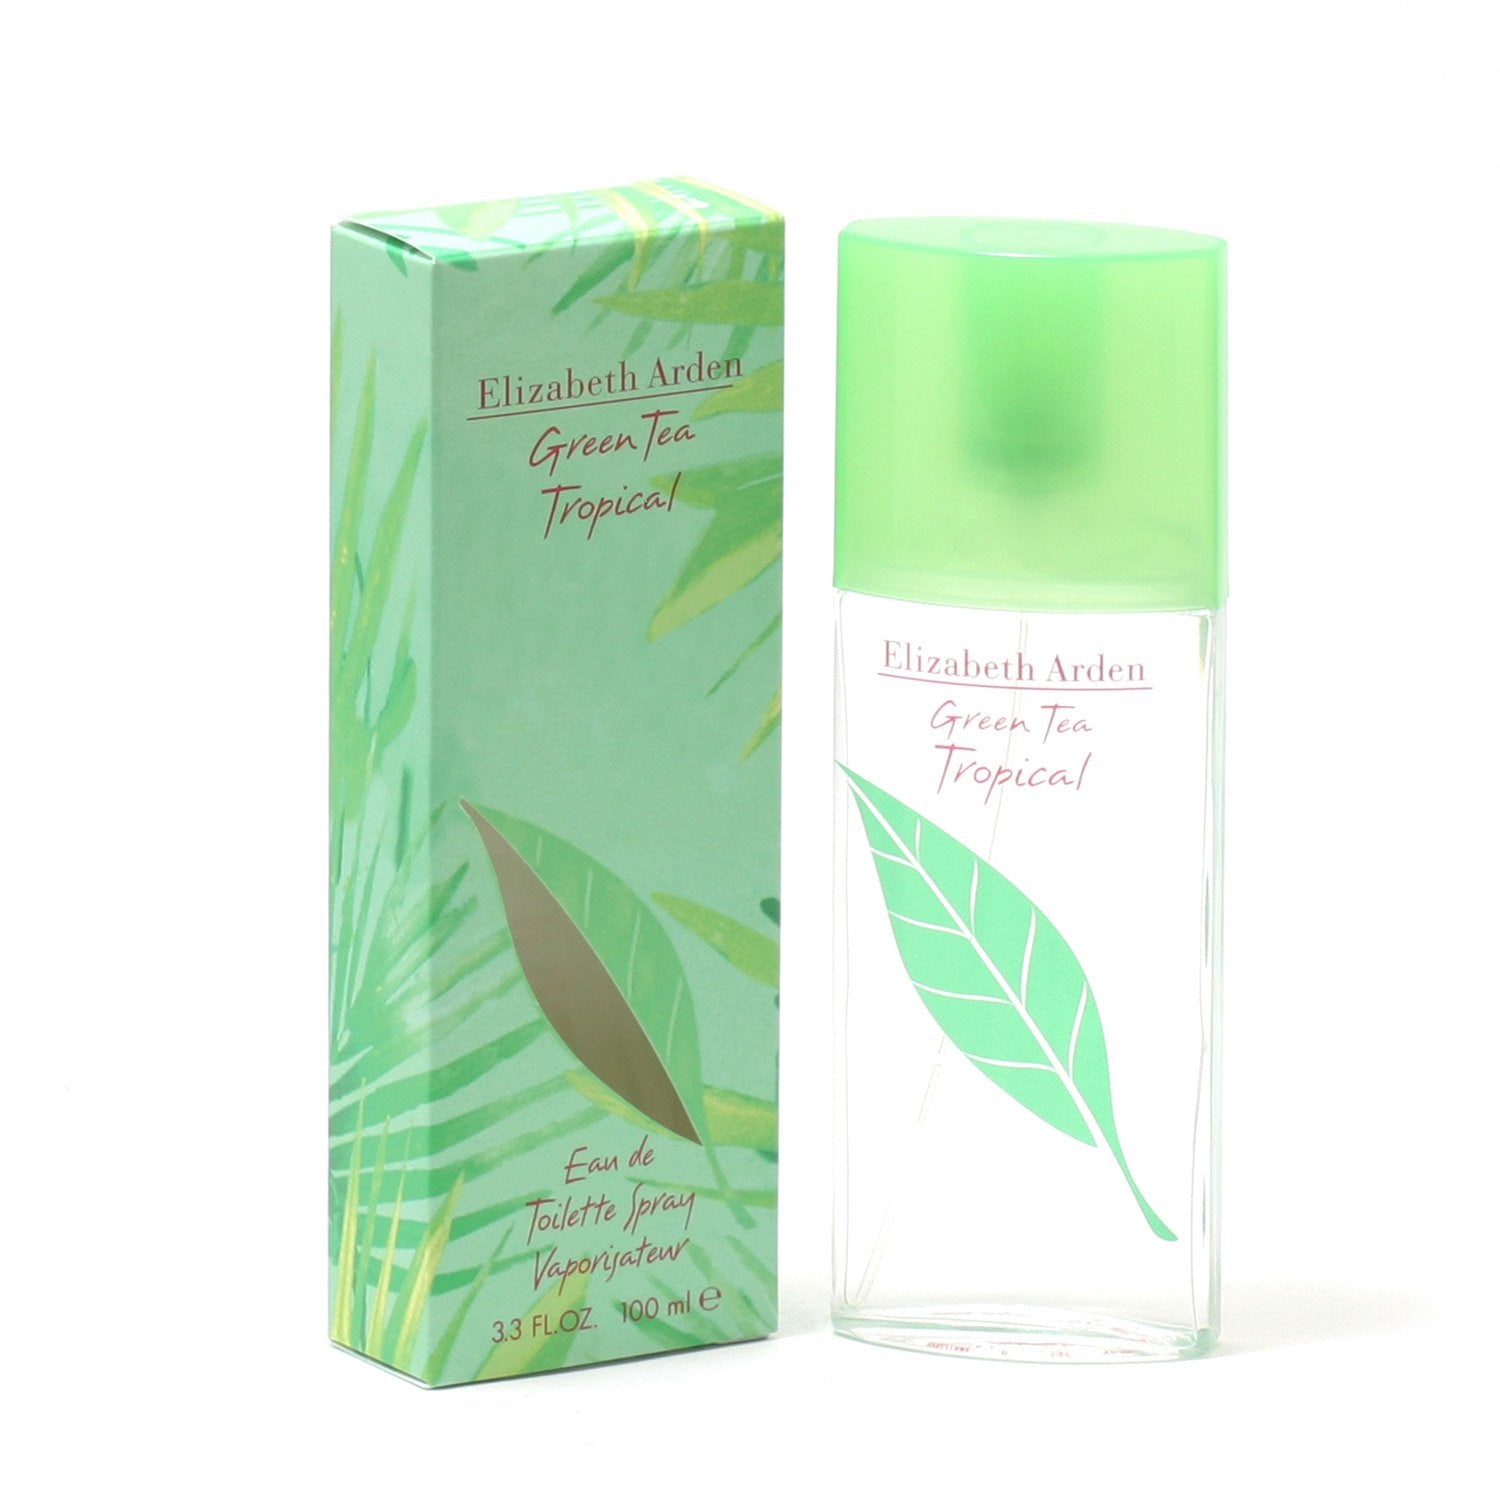 GREEN TEA TROPICAL FOR Fragrance ELIZABETH TOILETTE Room BY – - ARDEN DE EAU SPRA WOMEN